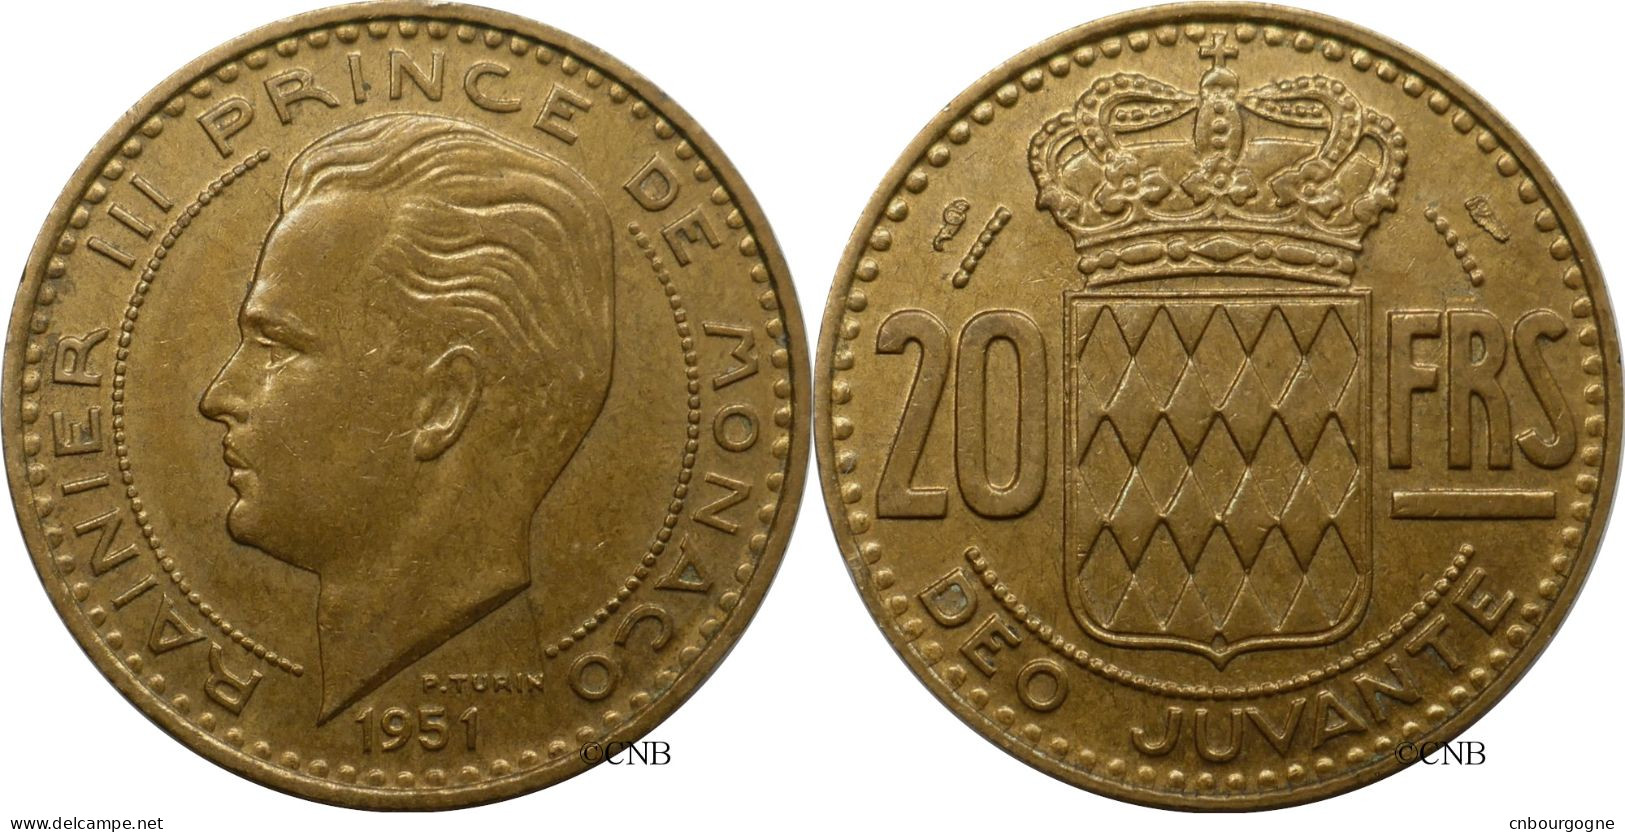 Monaco - Principauté - Rainier III - 20 Francs 1951 - TTB+/AU50 - Mon6579 - 1949-1956 Alte Francs